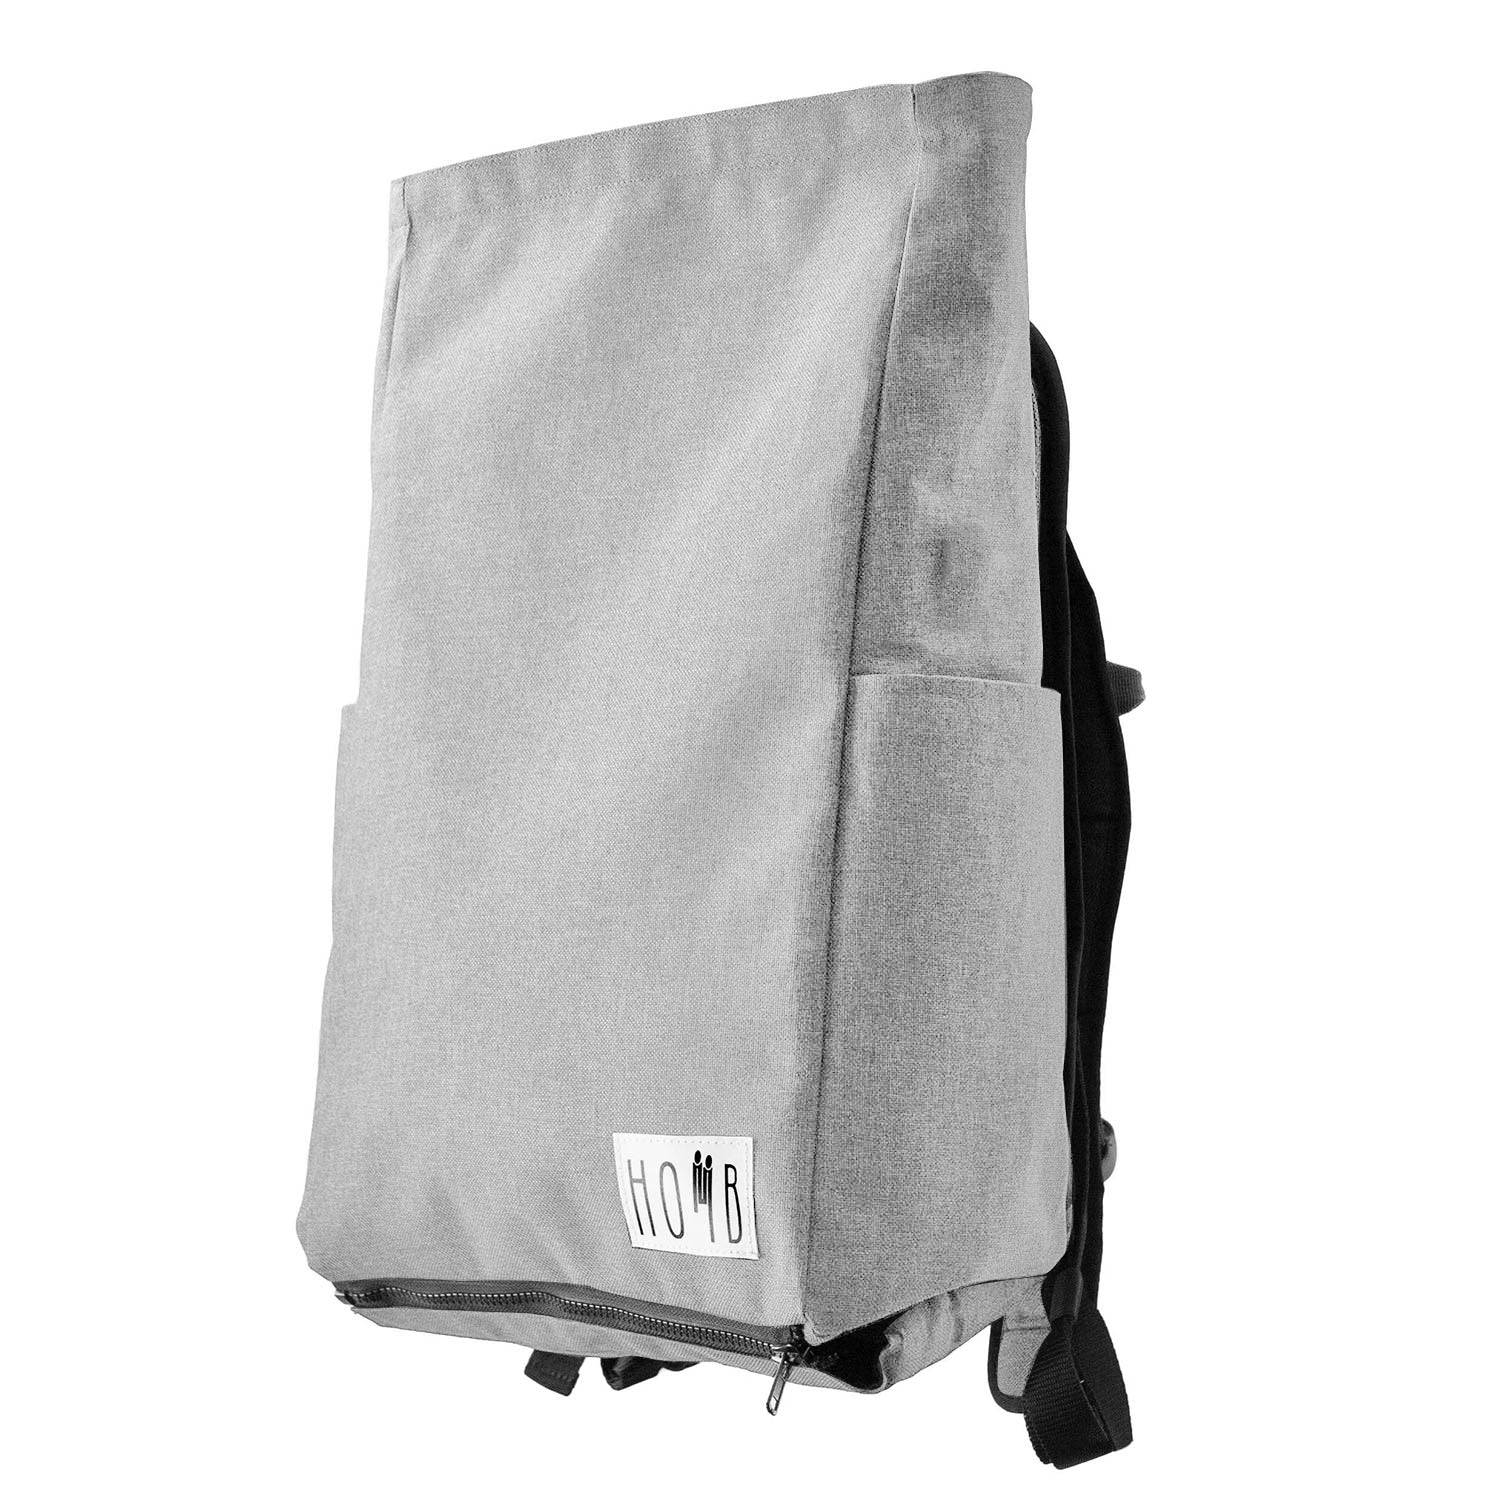 HOMB - Rucksack mit Rückentrage - Kindertrage ab 2 Jahre bis 25 kg-2